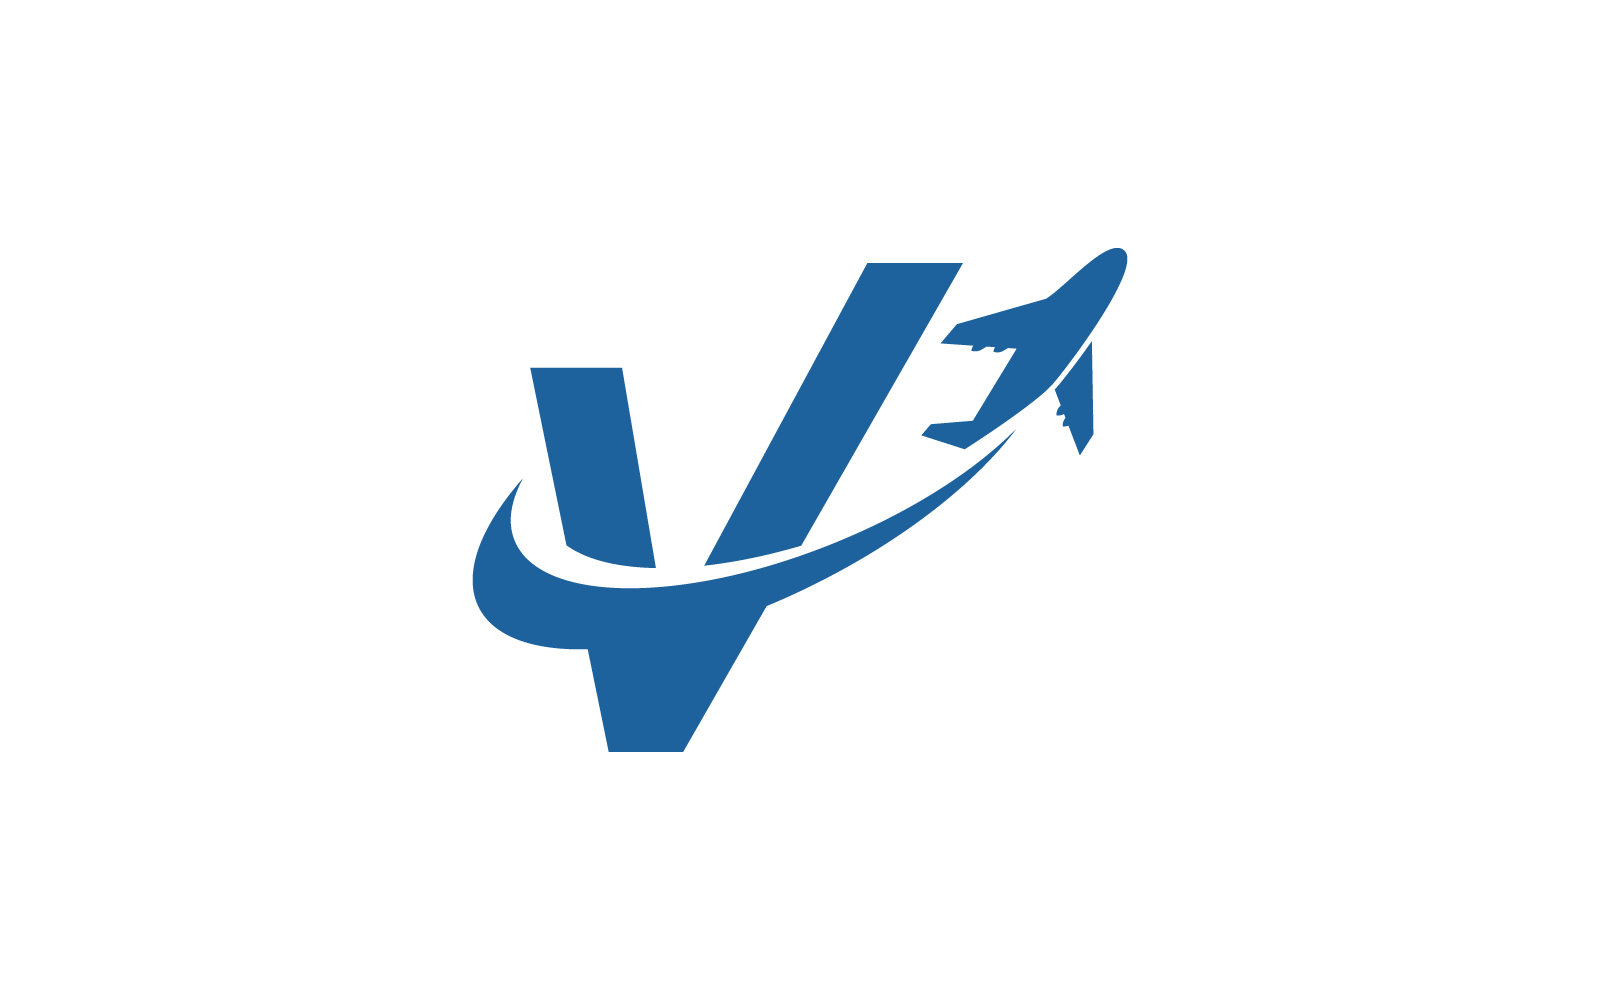 V ilk logo vektör şablonuna sahip Hava Uçağı